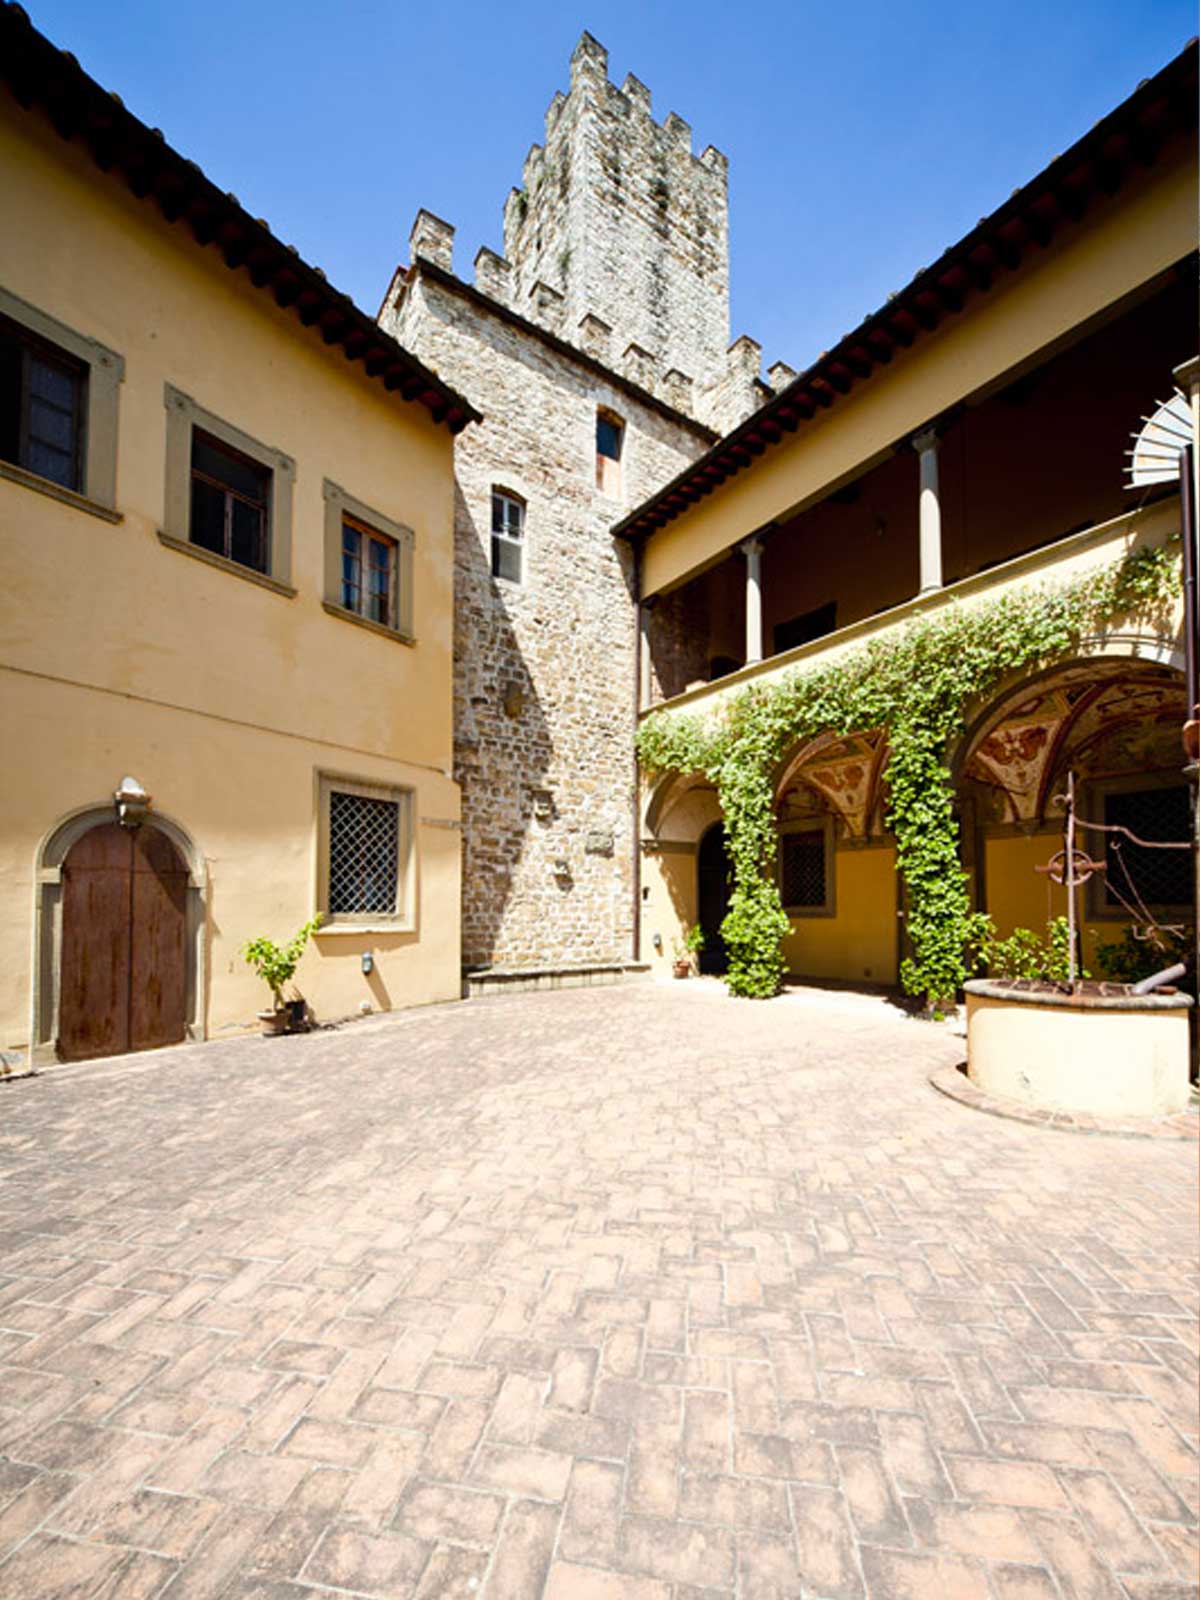 Location Storiche Firenze Castello di Montauto